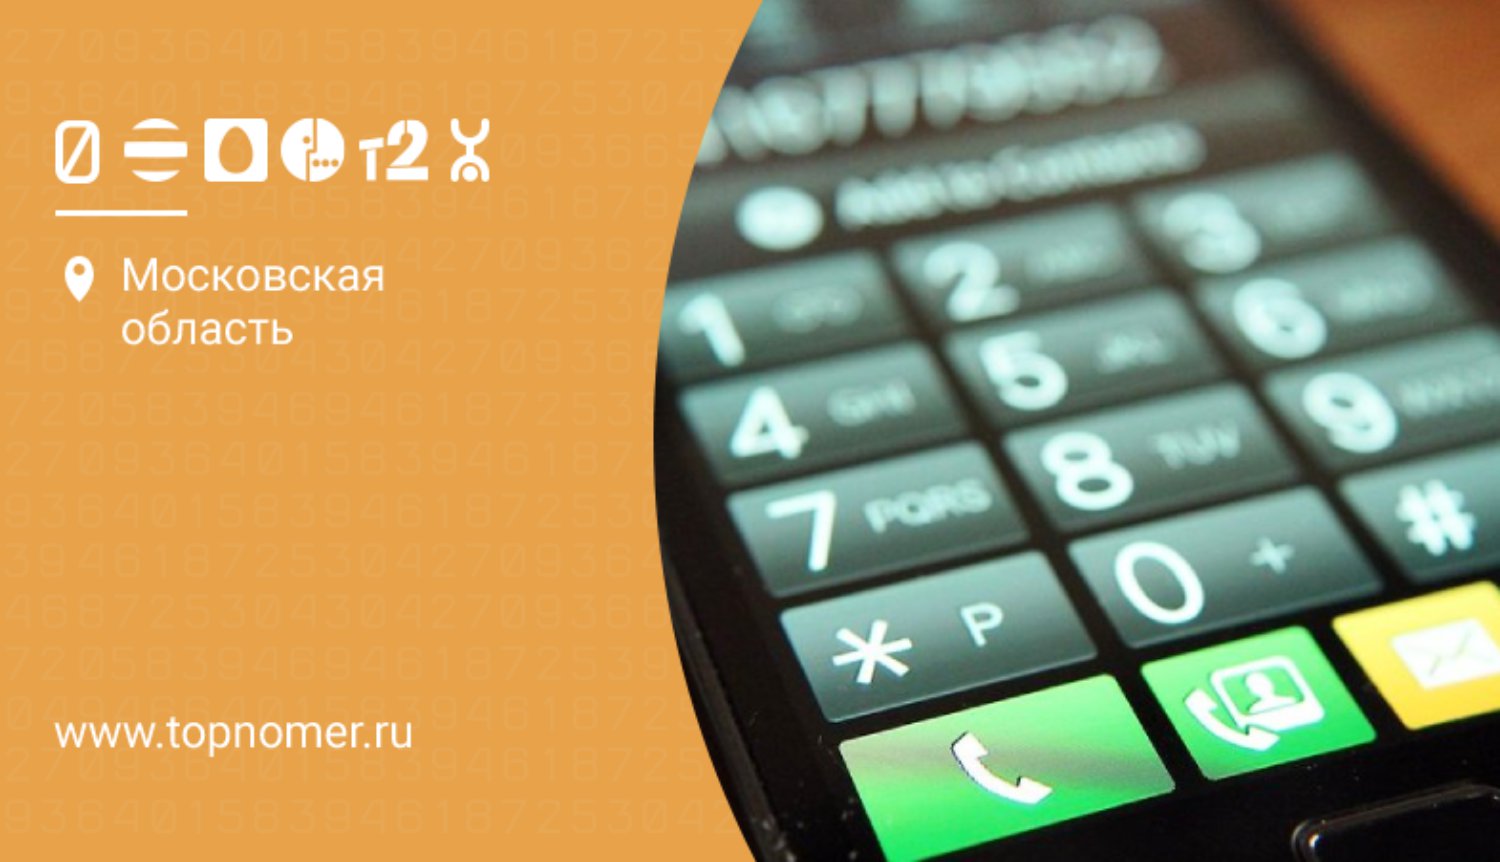 Код россии для мобильного в телеграмм телефона фото 117